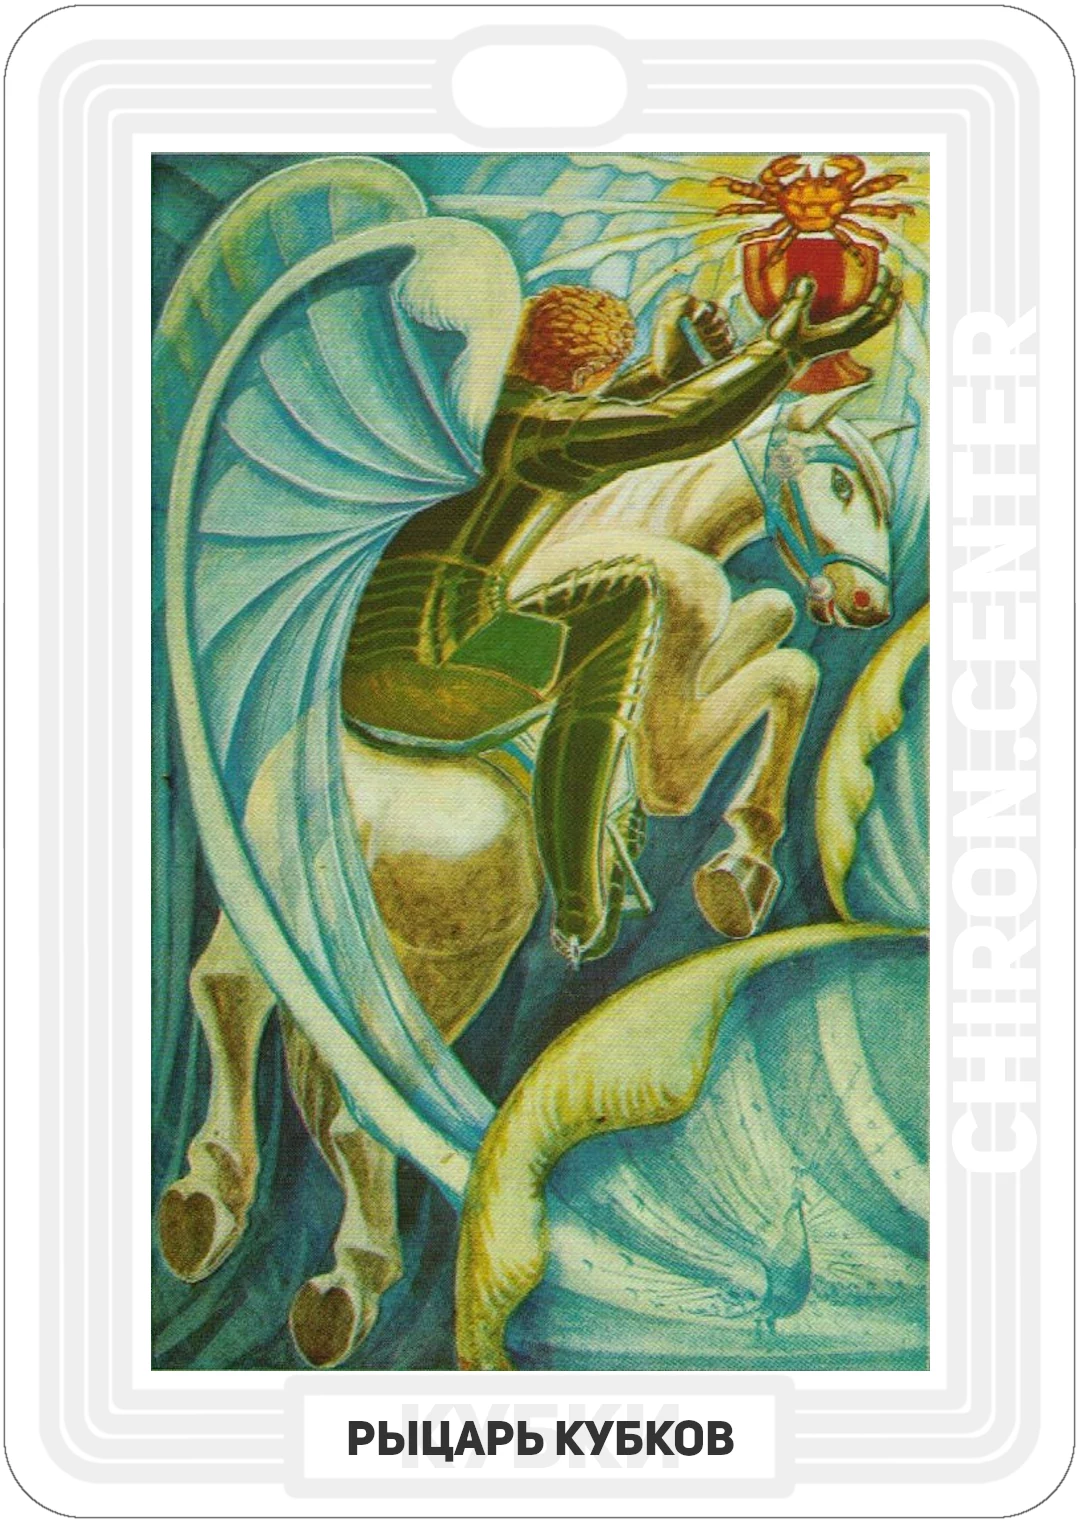 У Рыцаря Чаш большие крылья, с помощью которых он парит на своей мощной белой лошади. На нем зеленые доспехи, и чаша в вытянутой правой руке его, содержит Рака или Краба. Водяной знак Рака может o относиться к семейным отношениям.